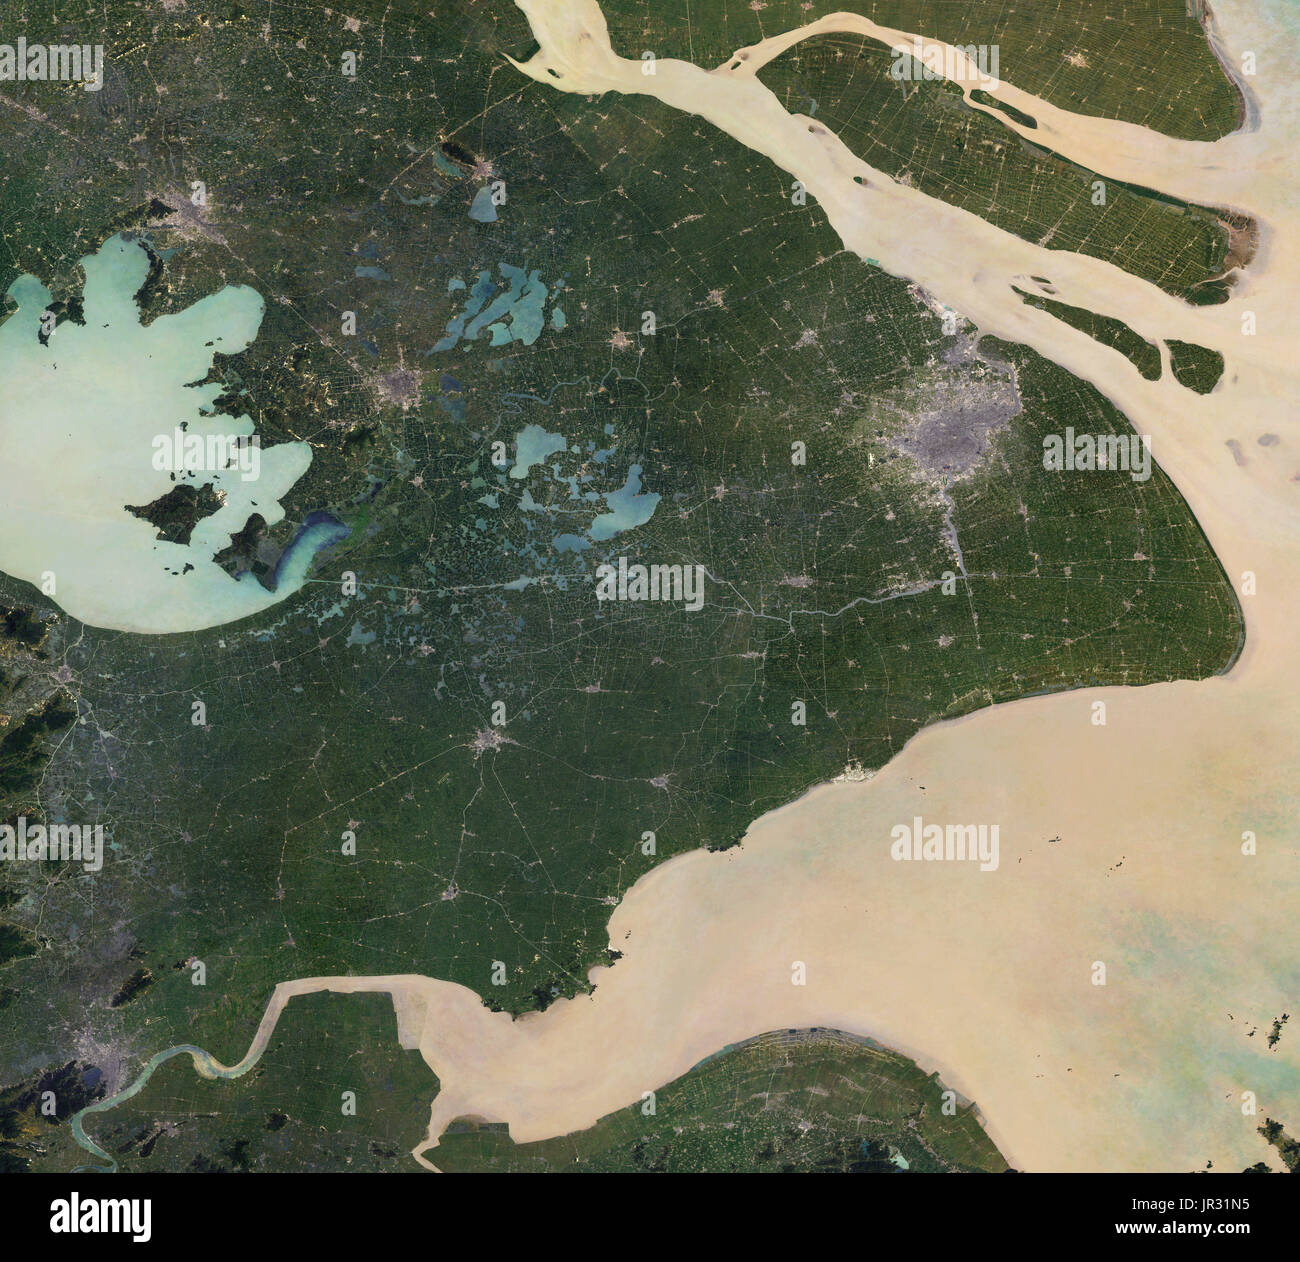 Shanghai, Chine, capturé par le Thematic Mapper sur Landsat 5 entre 1984 et 1988. Comparer avec jg5369, montrant Shanghai en 2017. Banque D'Images